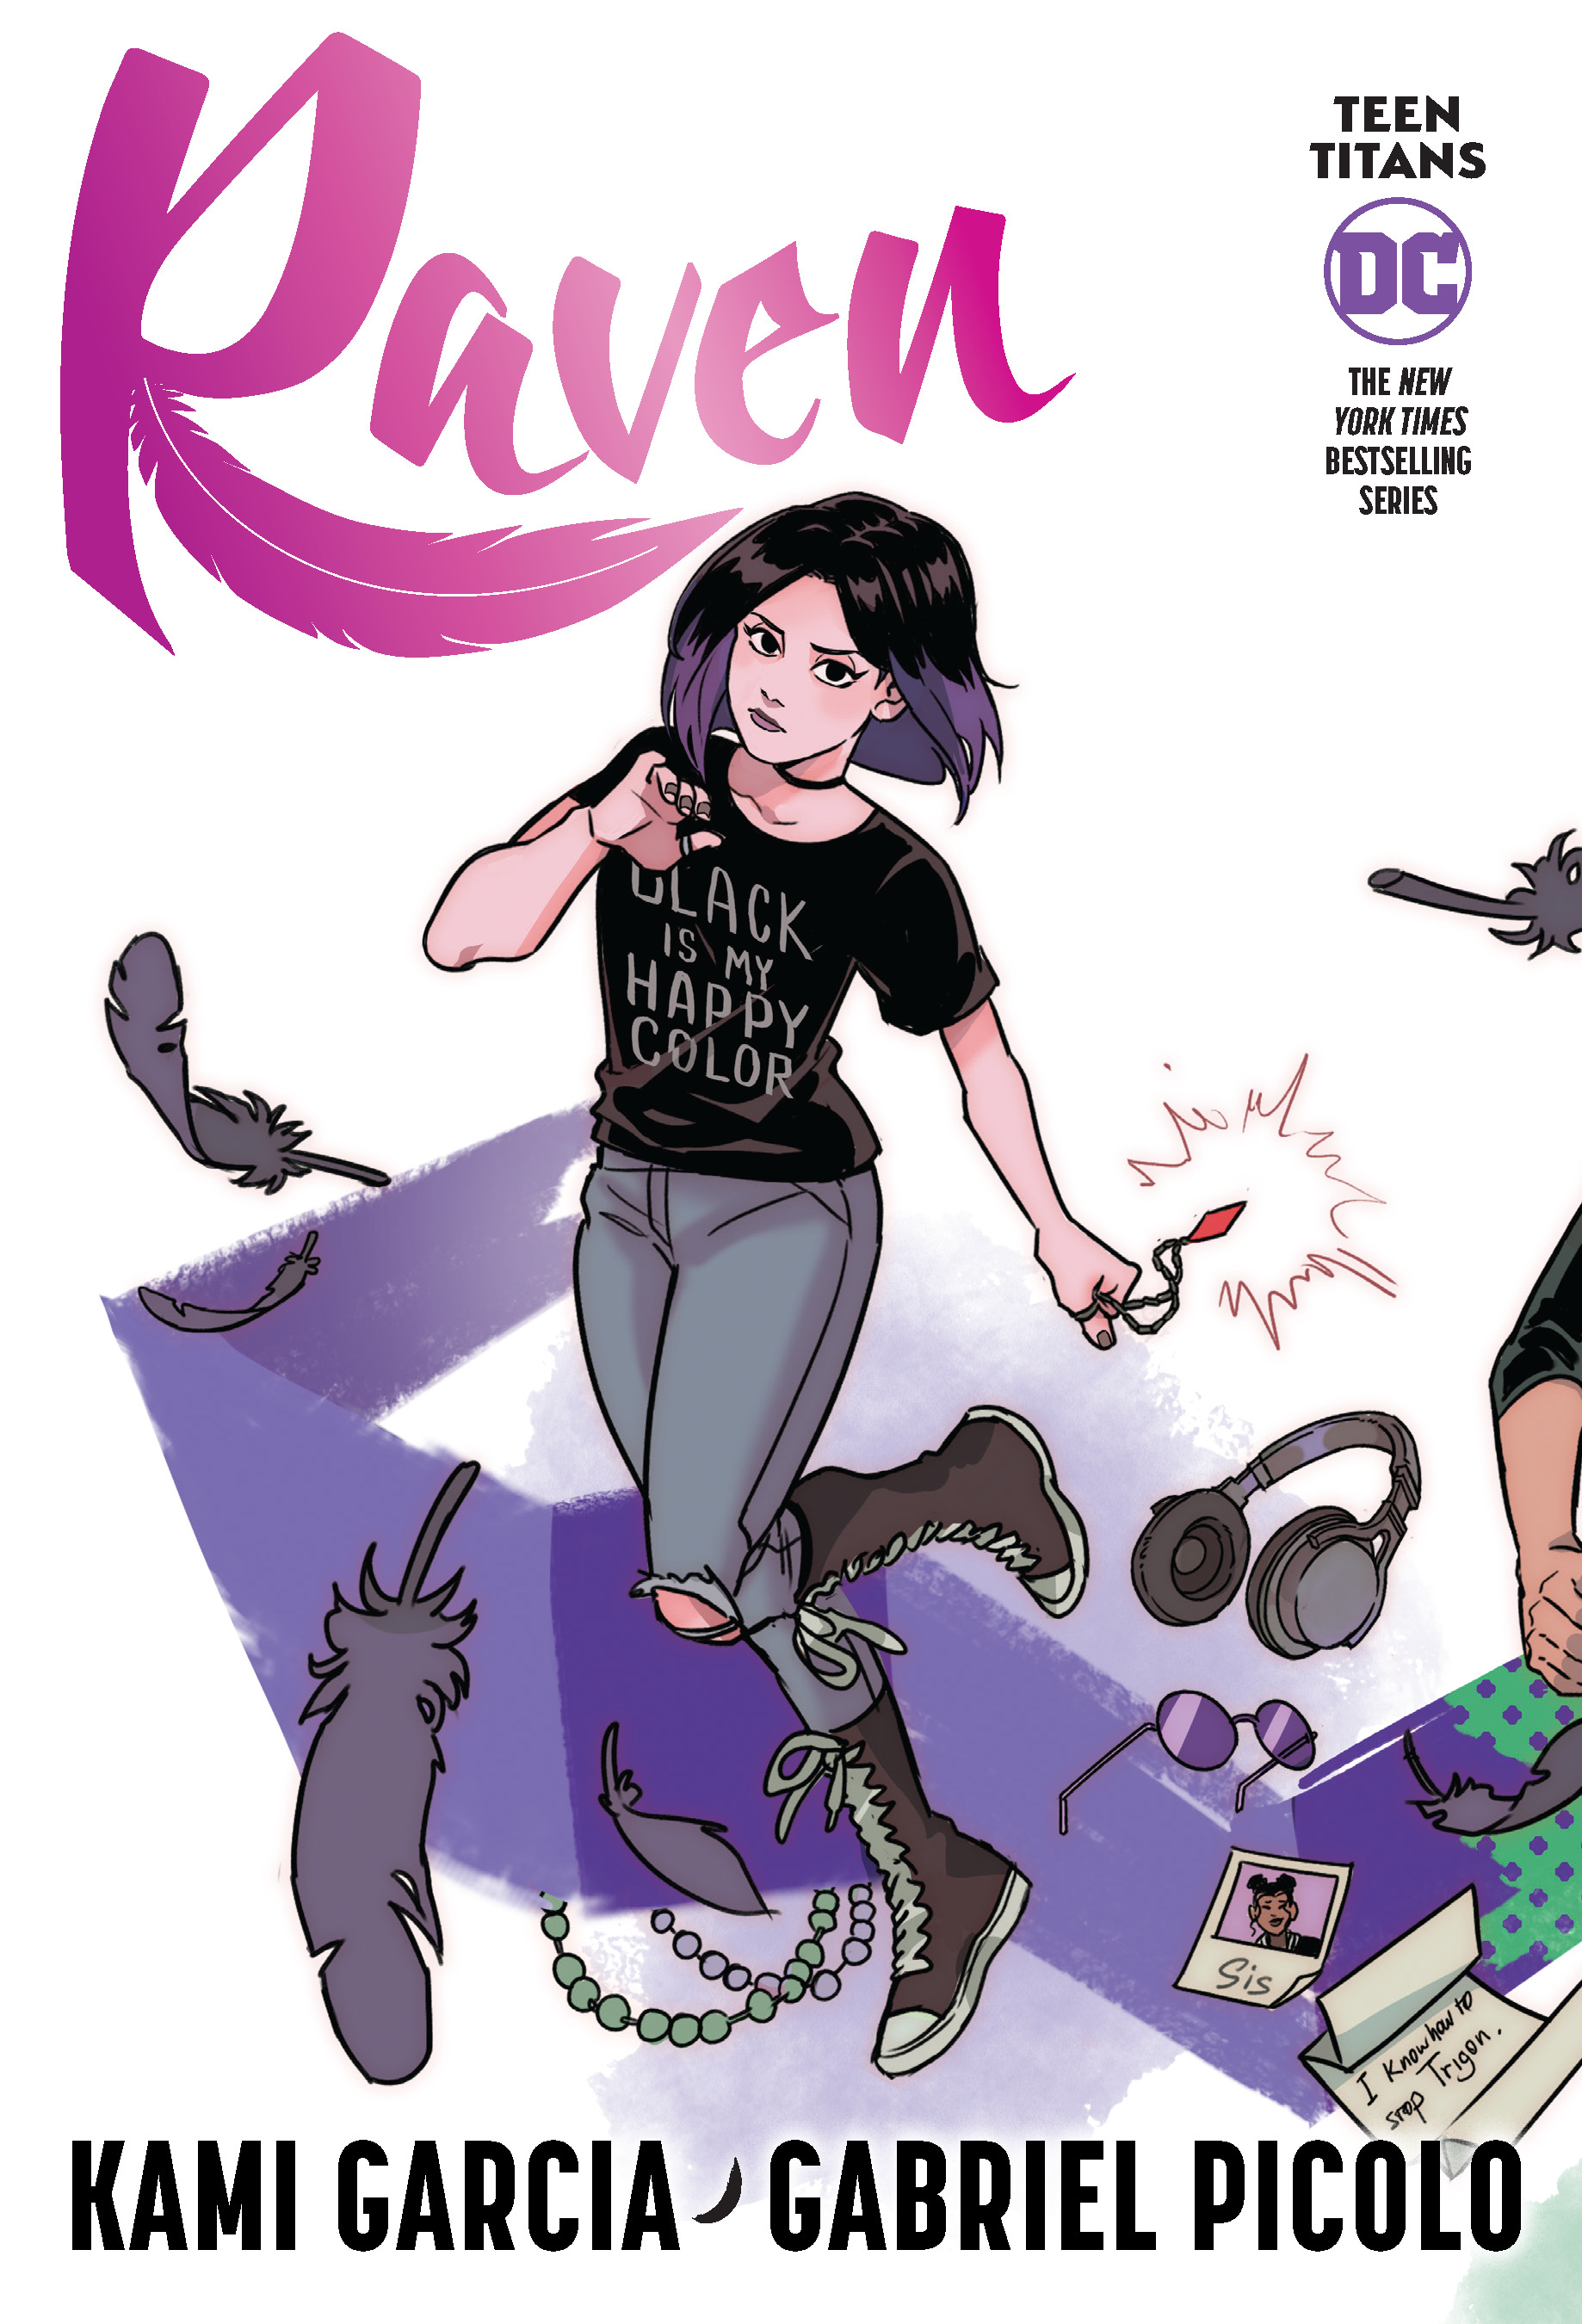 Teen Titans: Raven (Connecting Cover Edition) | Garcia, Kami (Auteur) | Picolo, Gabriel (Illustrateur)